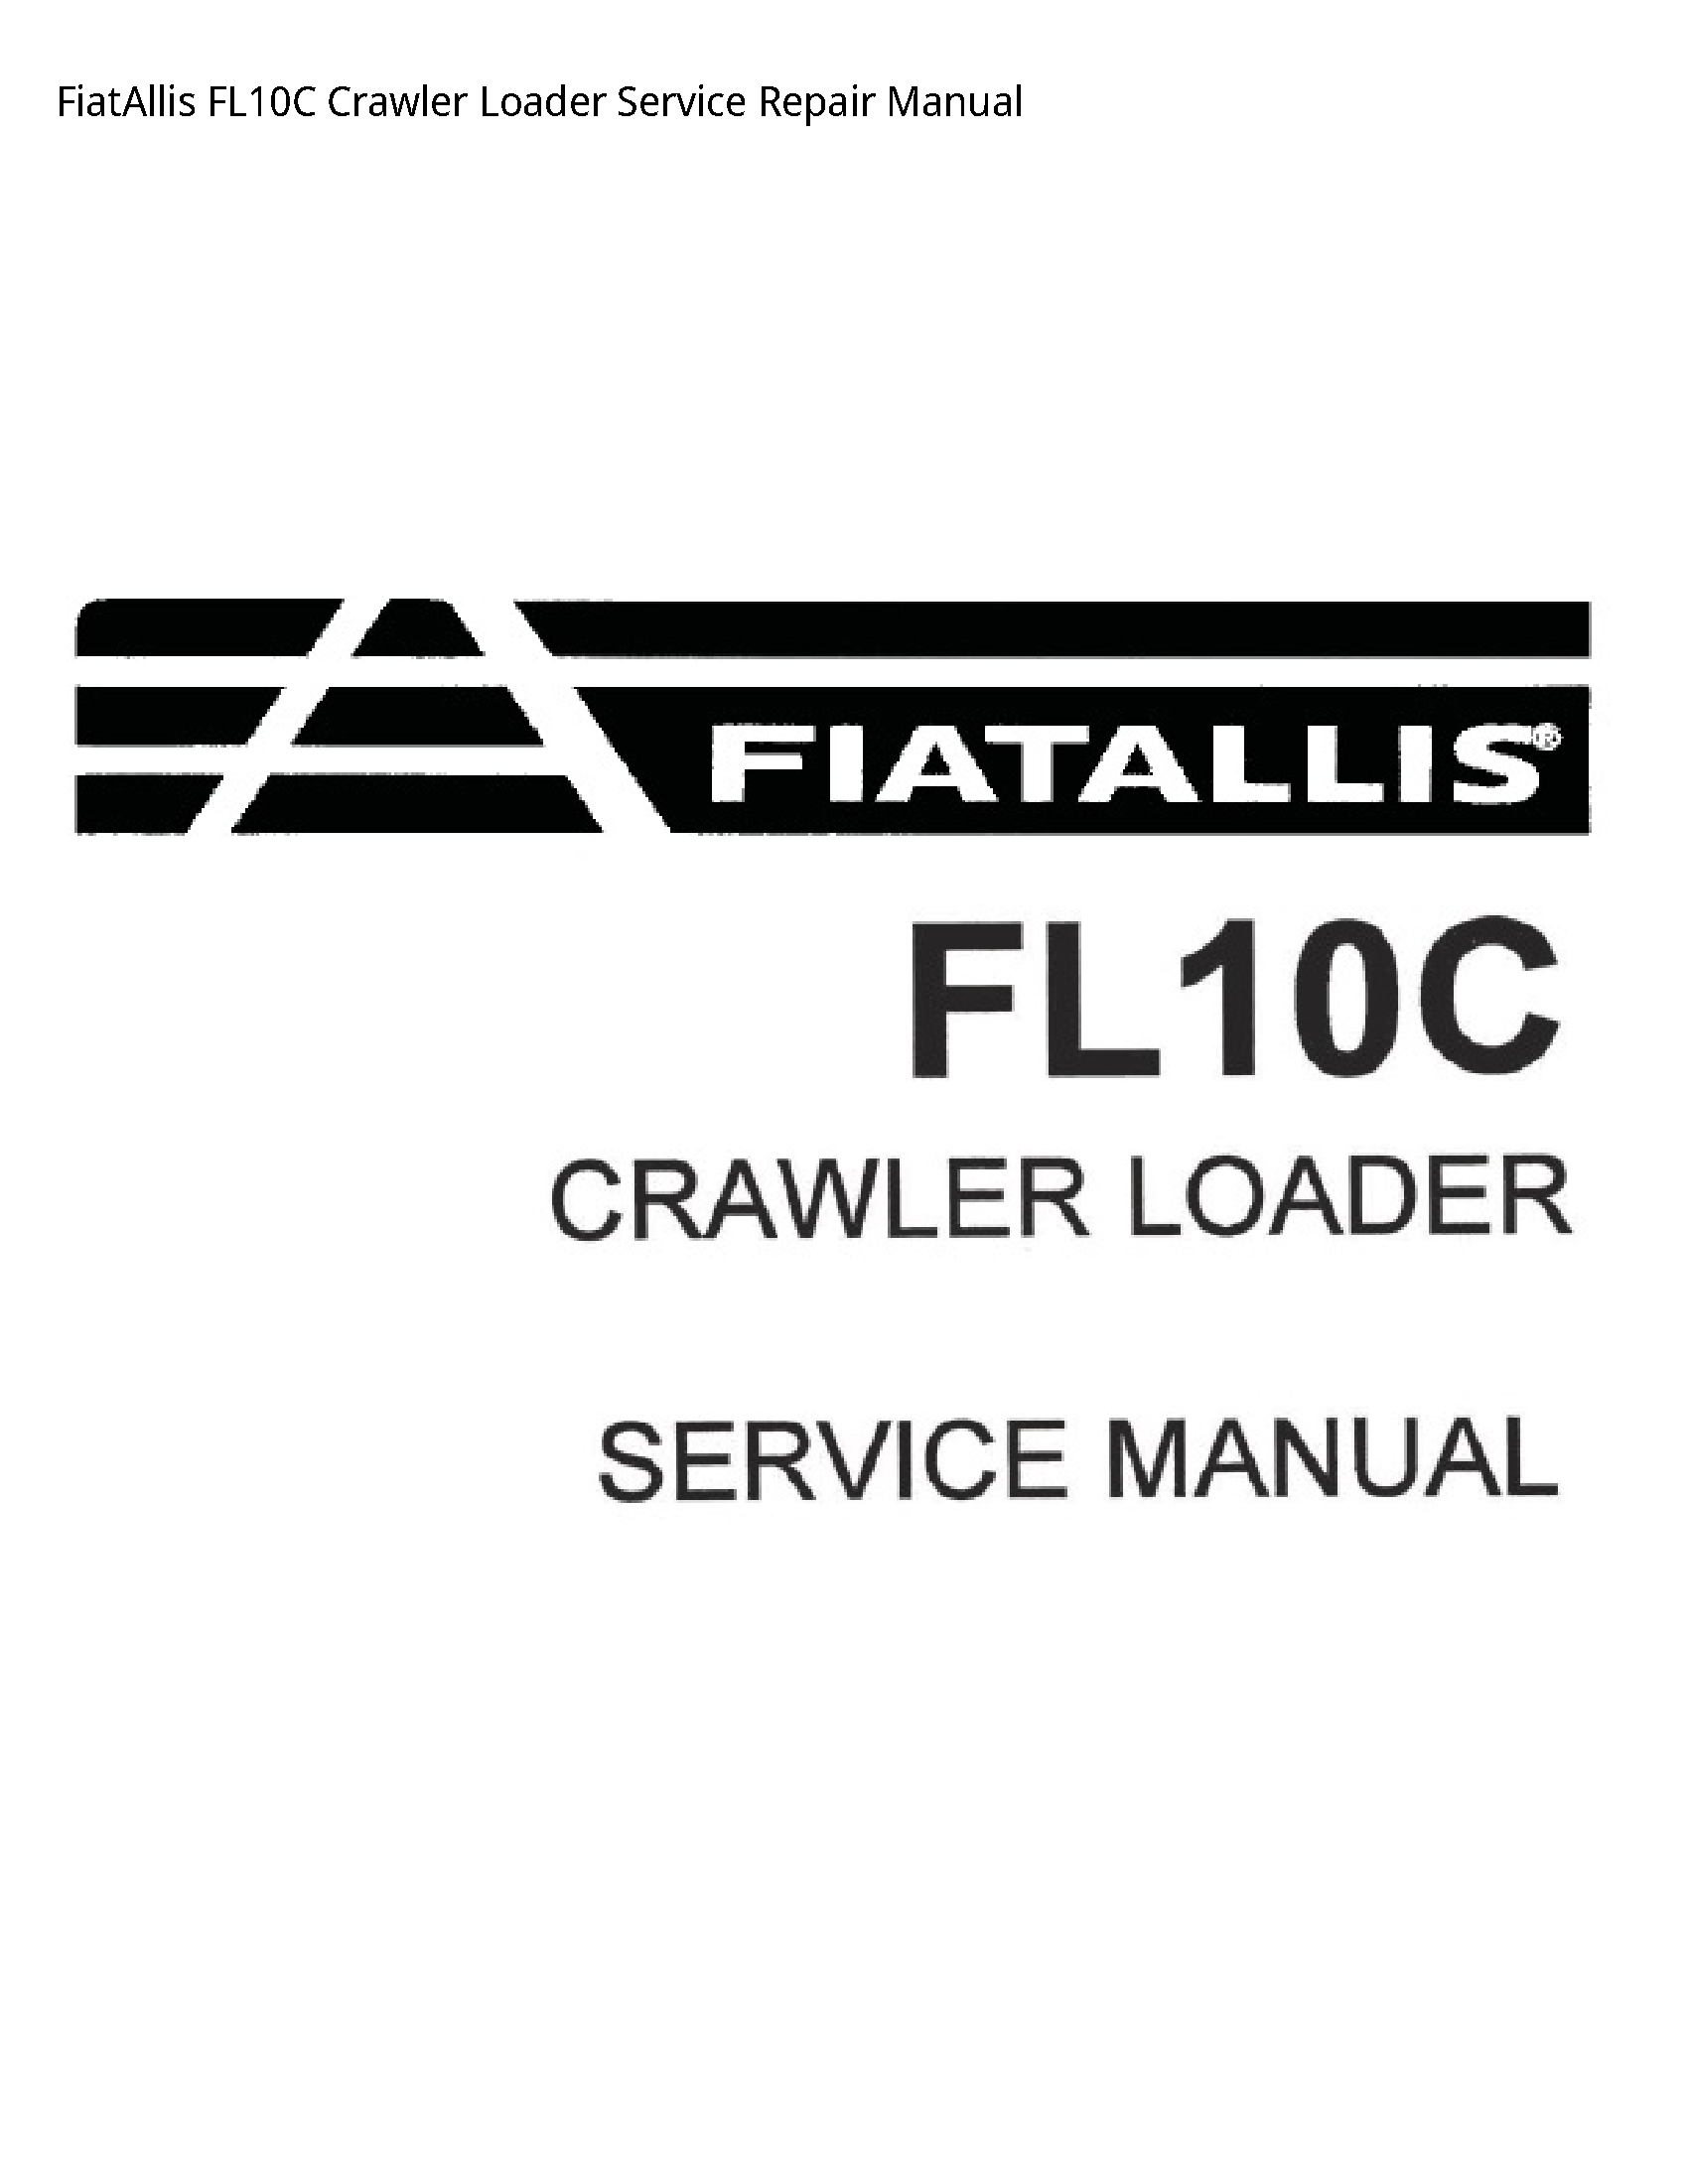 Fiatallis FL10C Crawler Loader manual